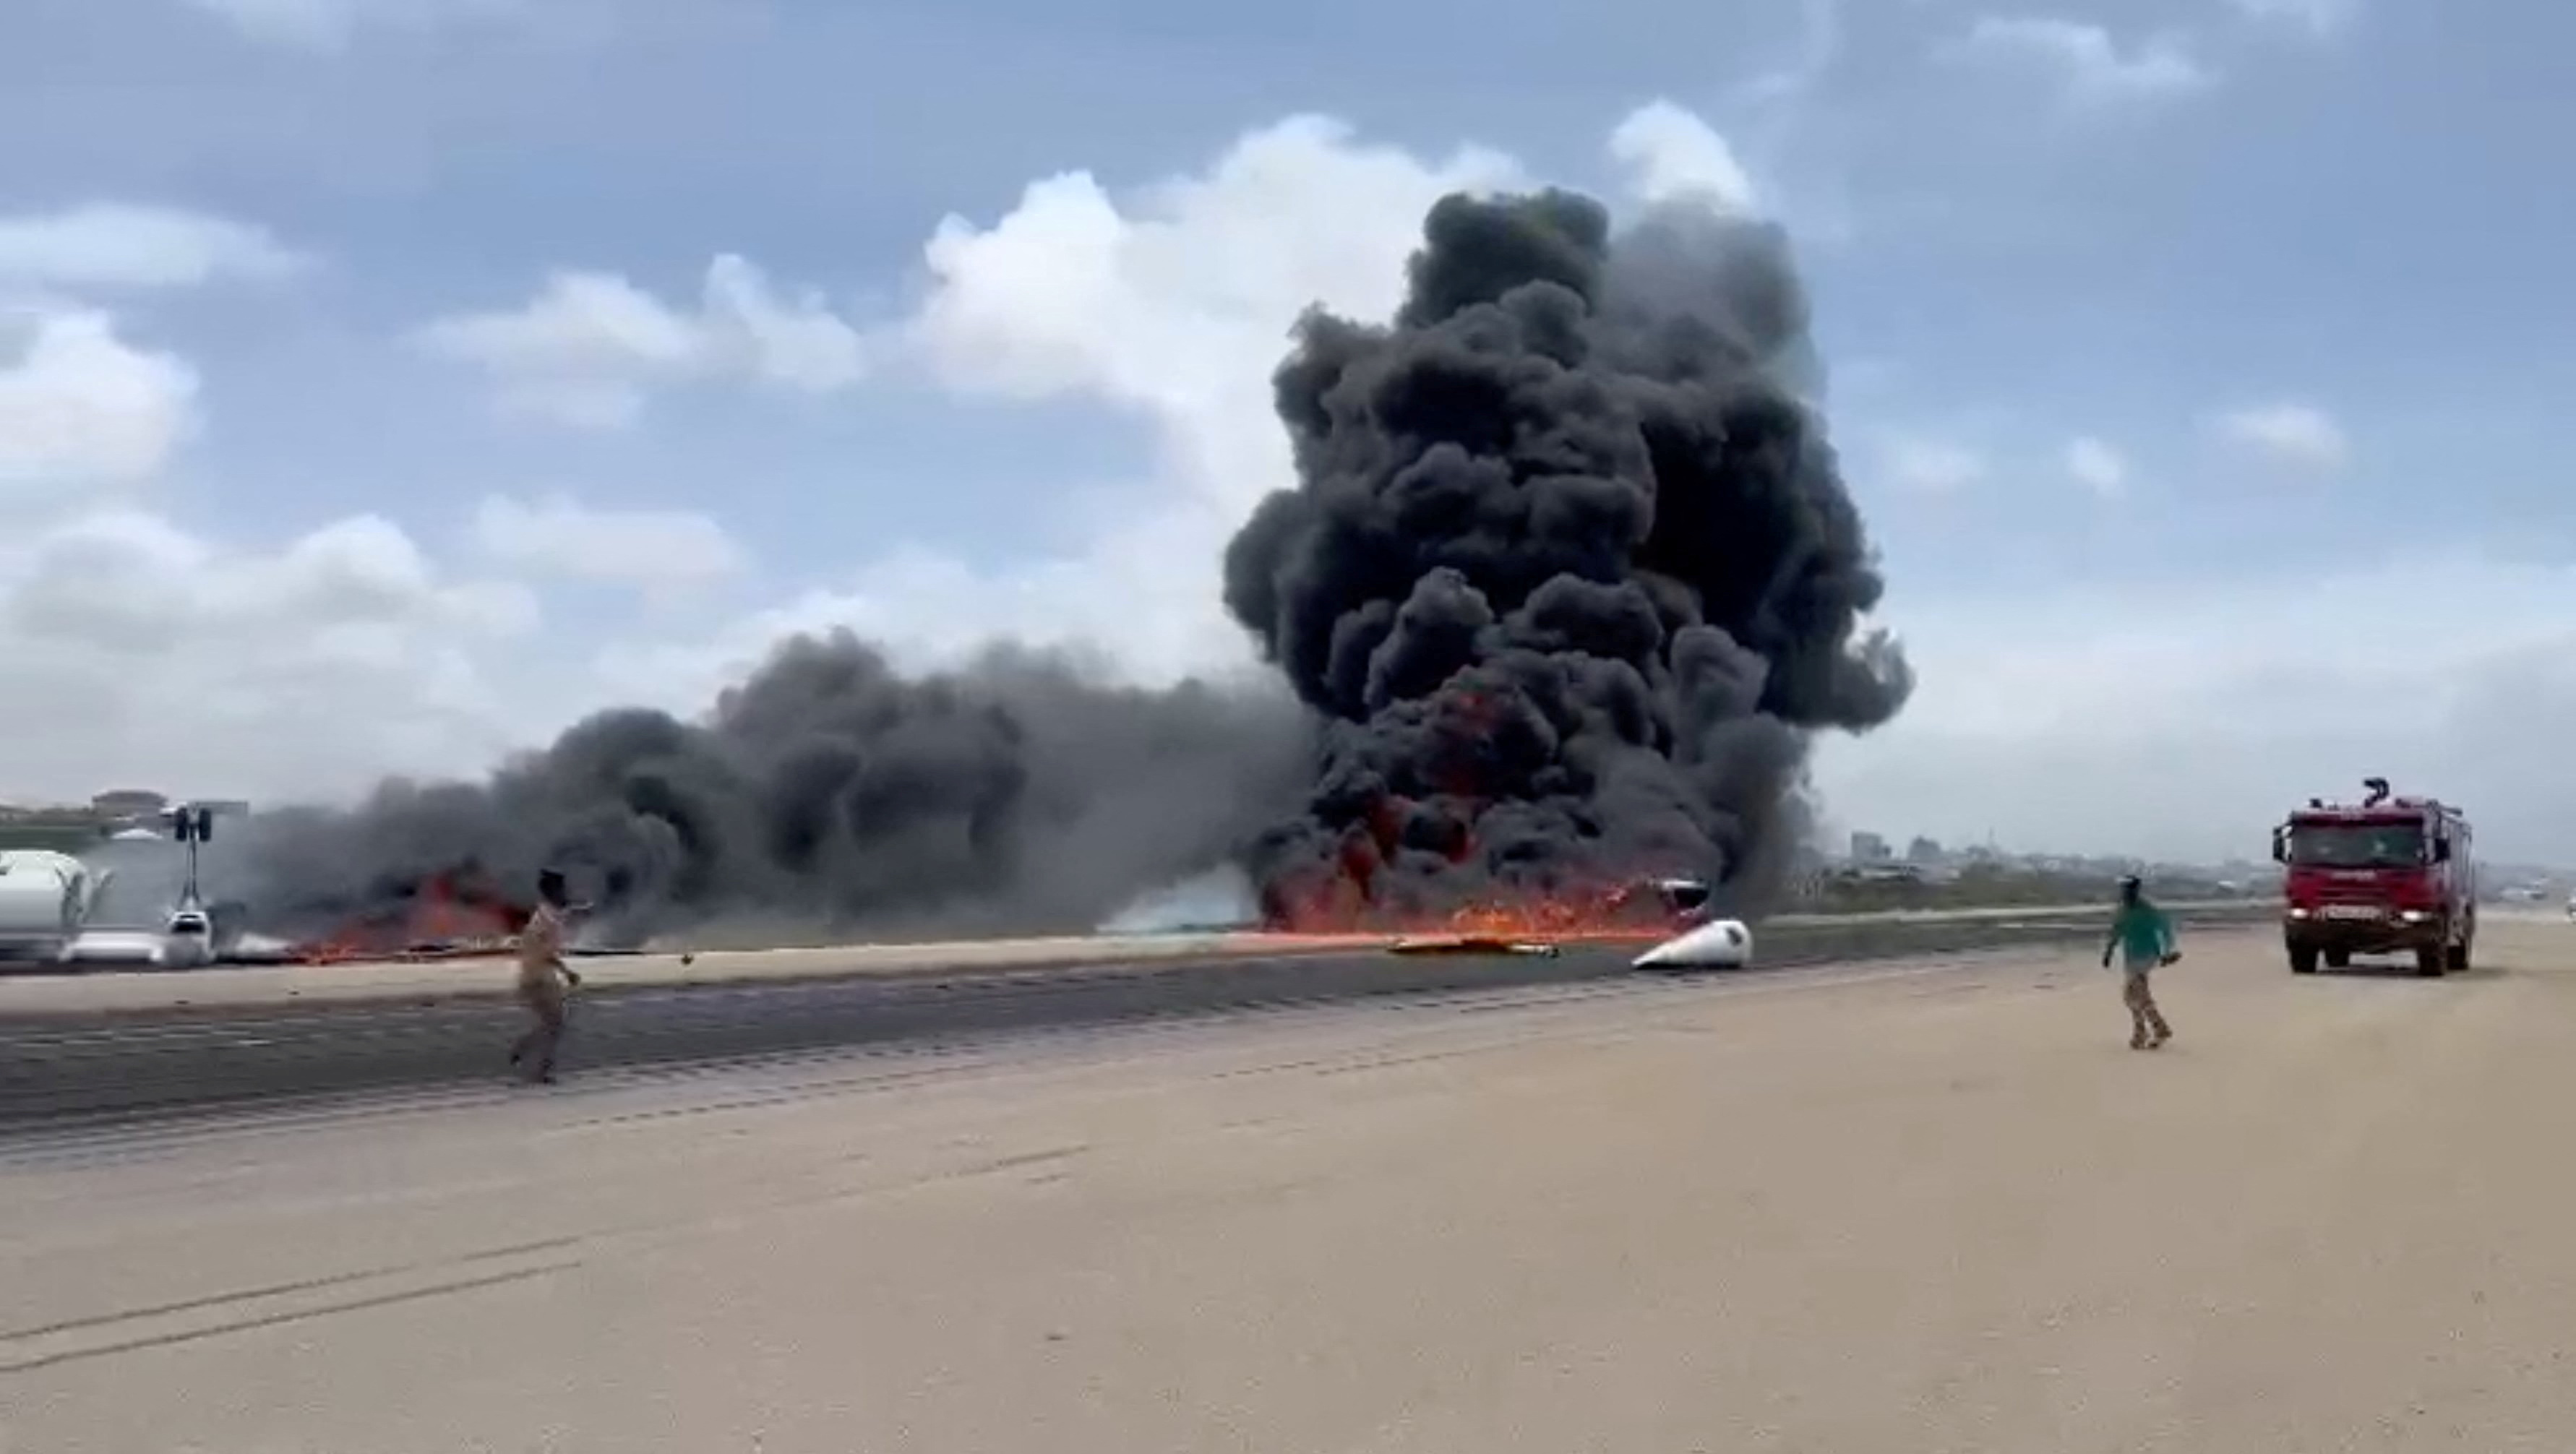 Fum curge dintr-un avion care s-a răsturnat după o aterizare accidentală, în Mogadiscio